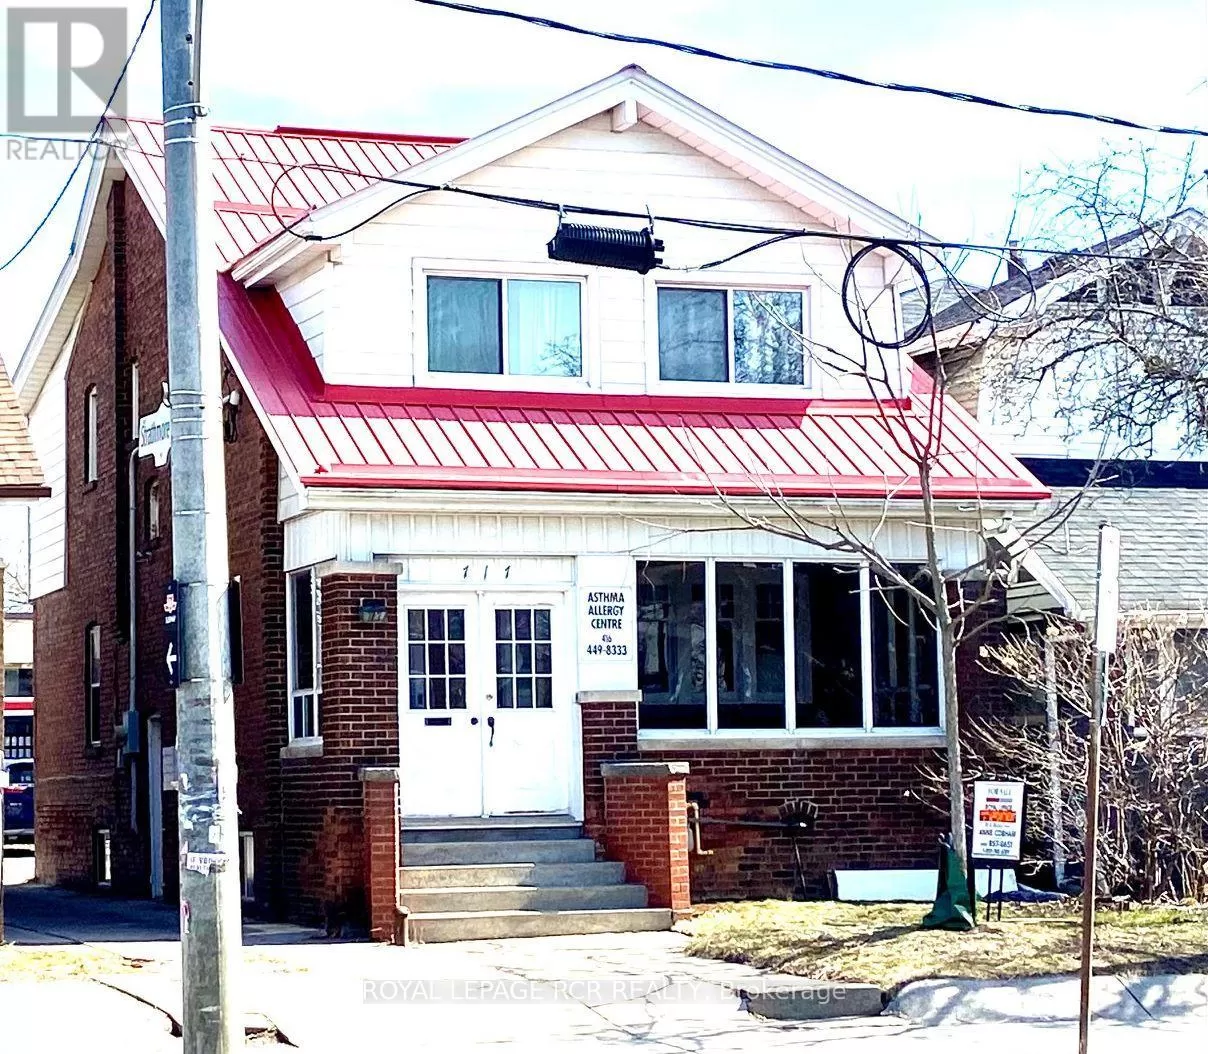 House for rent: 717 Coxwell Avenue, Toronto, Ontario M4C 3C1